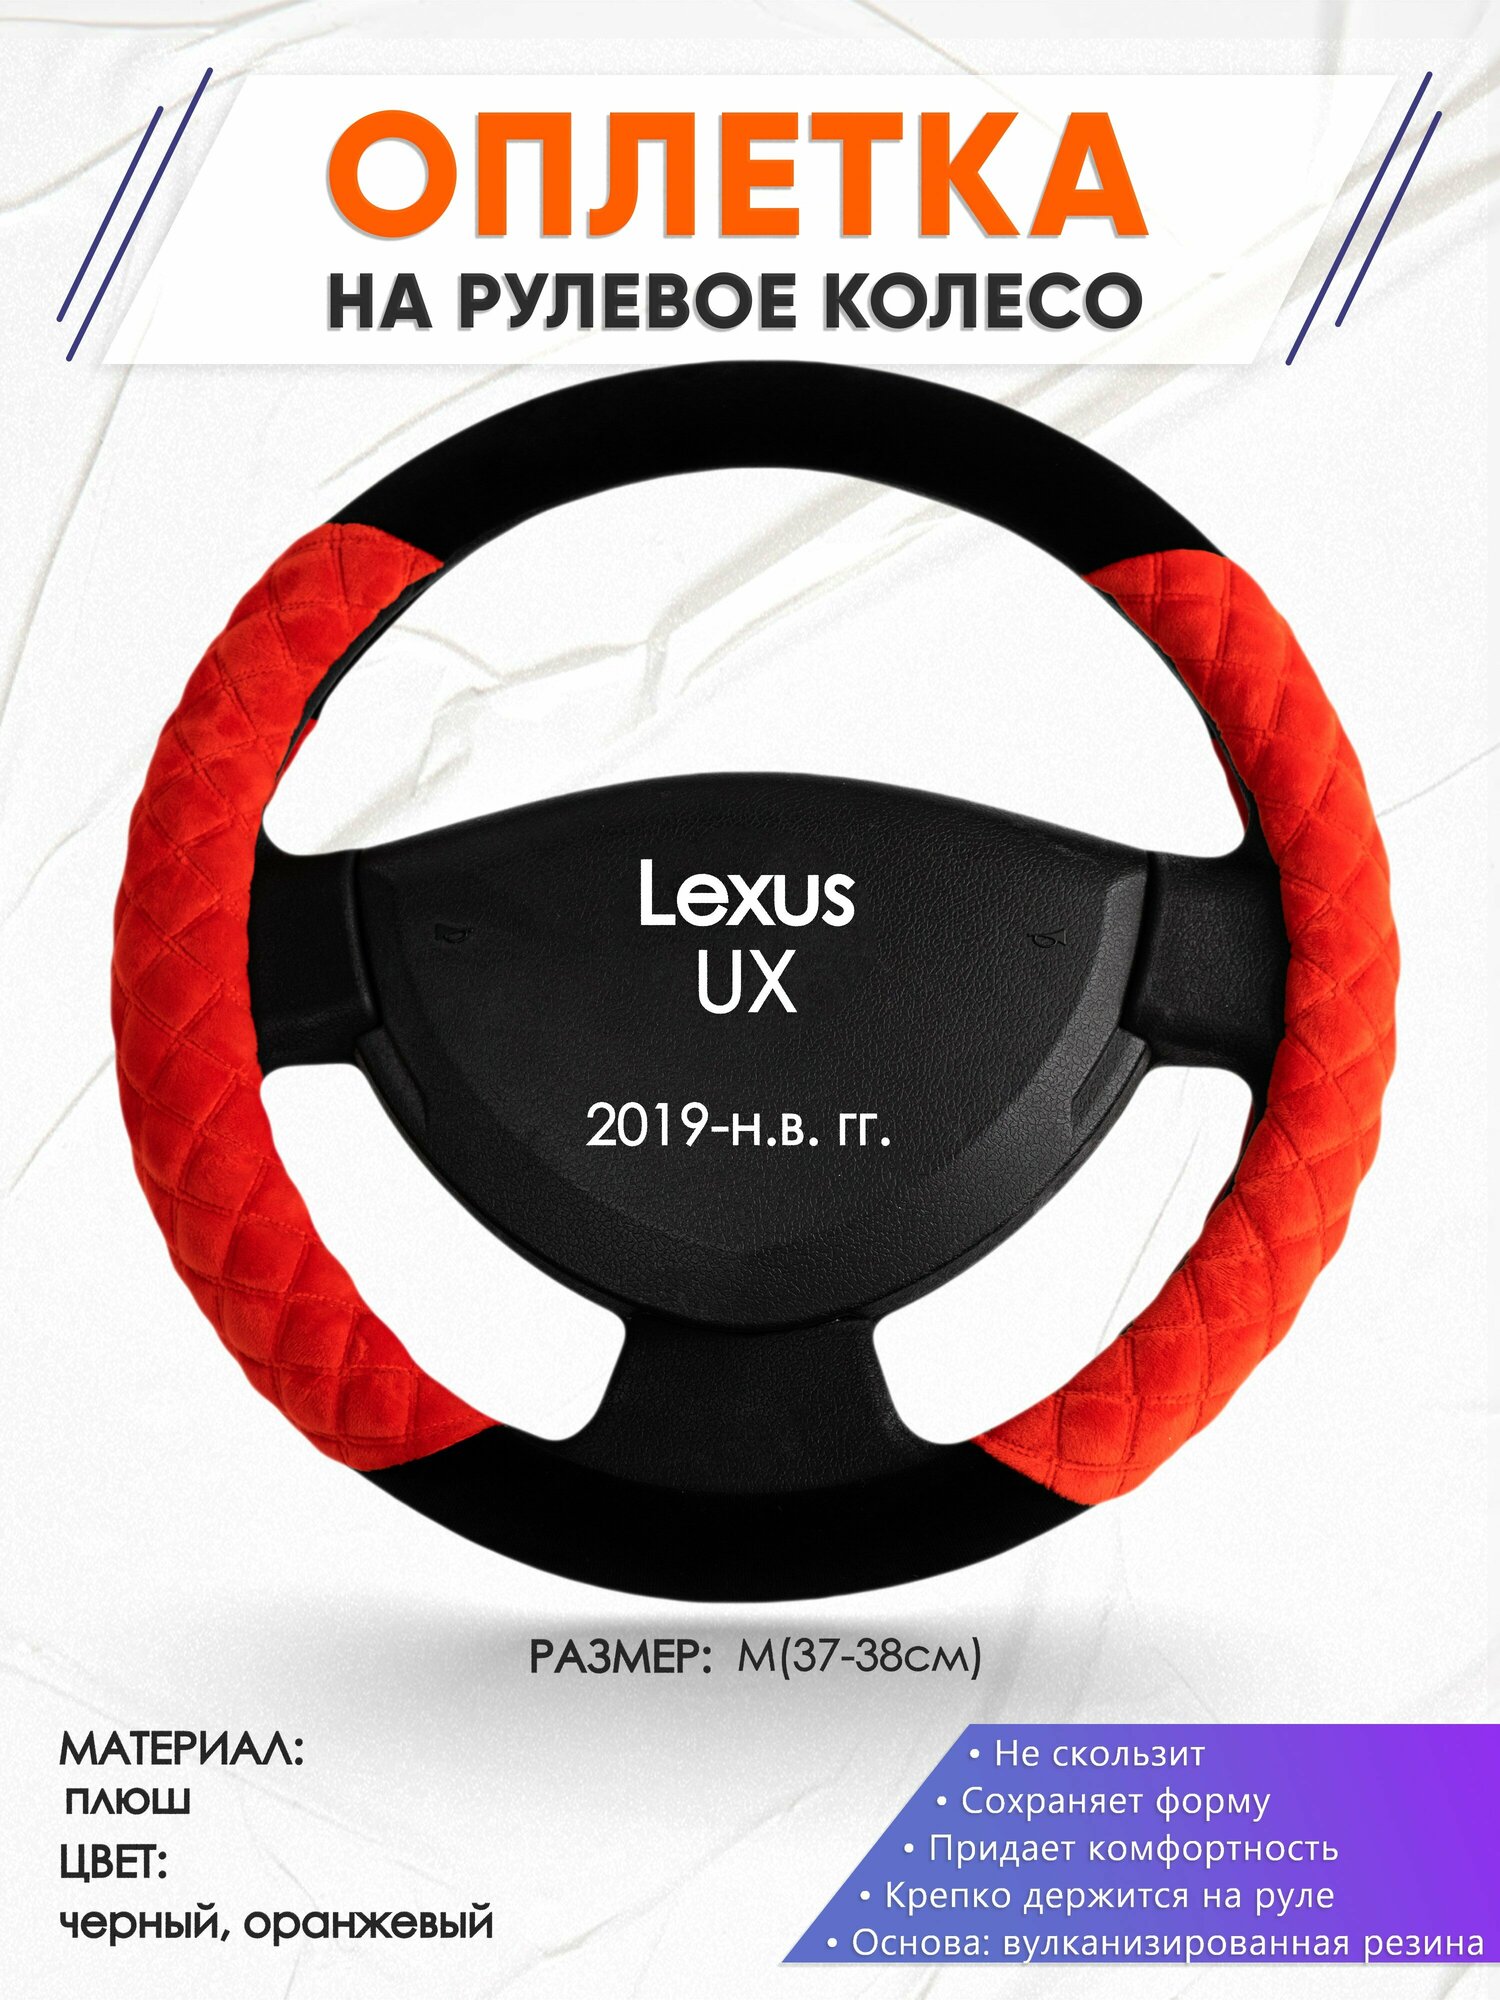 Оплетка наруль для Lexus UX(Лексус ) 2019-н. в. годов выпуска размер M(37-38см) Замша 35